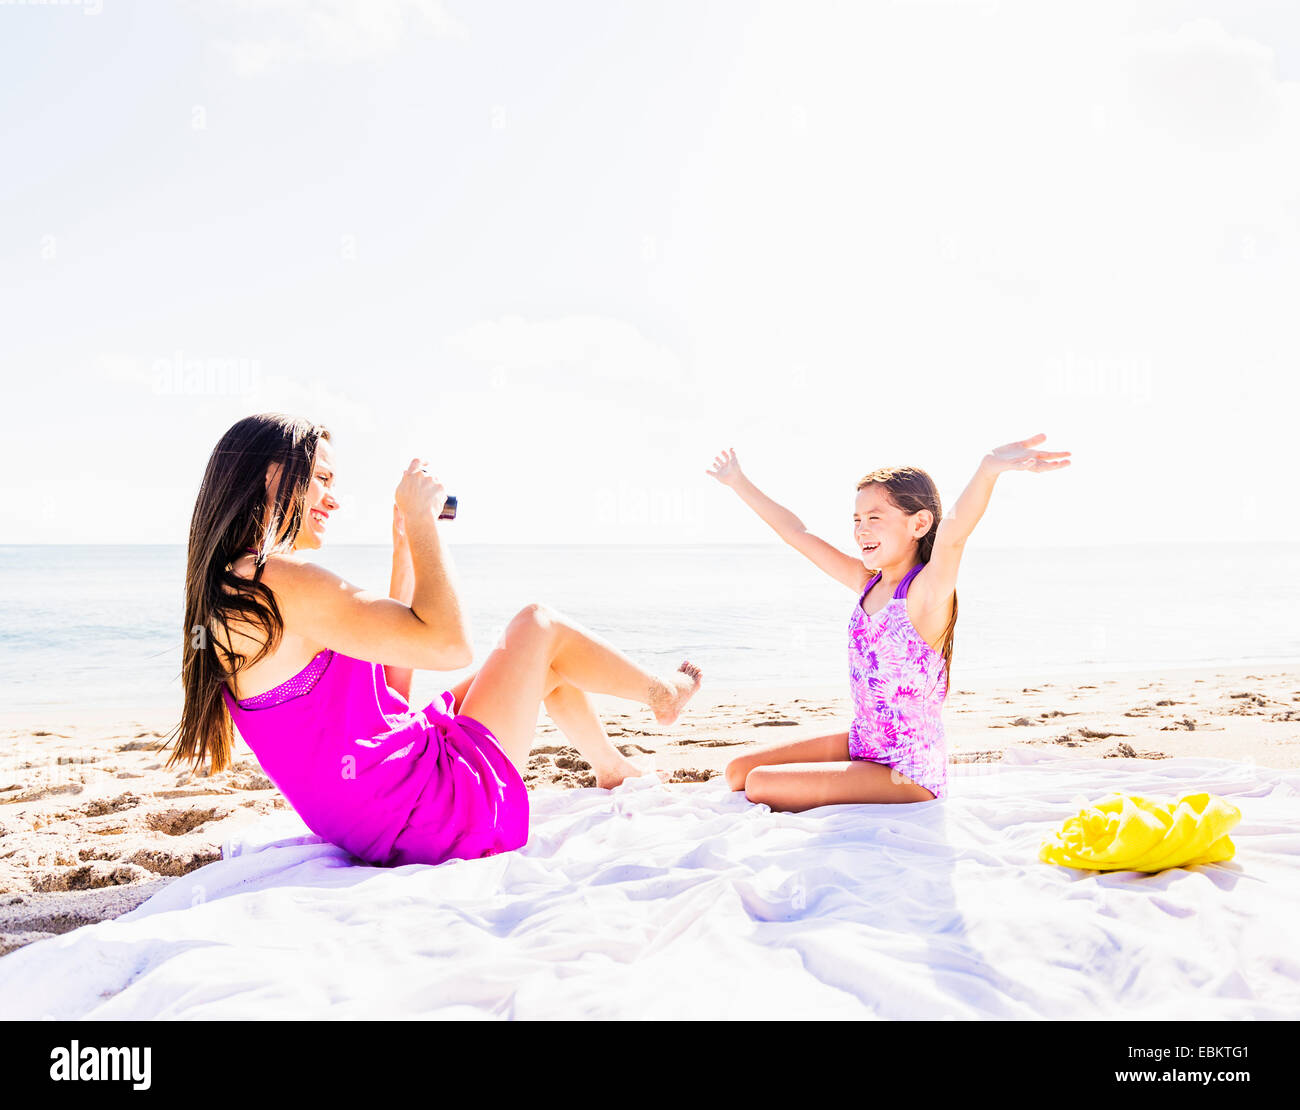 USA, Floride, Jupiter, maman de prendre une photographie de sa fille (6-7) on beach Banque D'Images